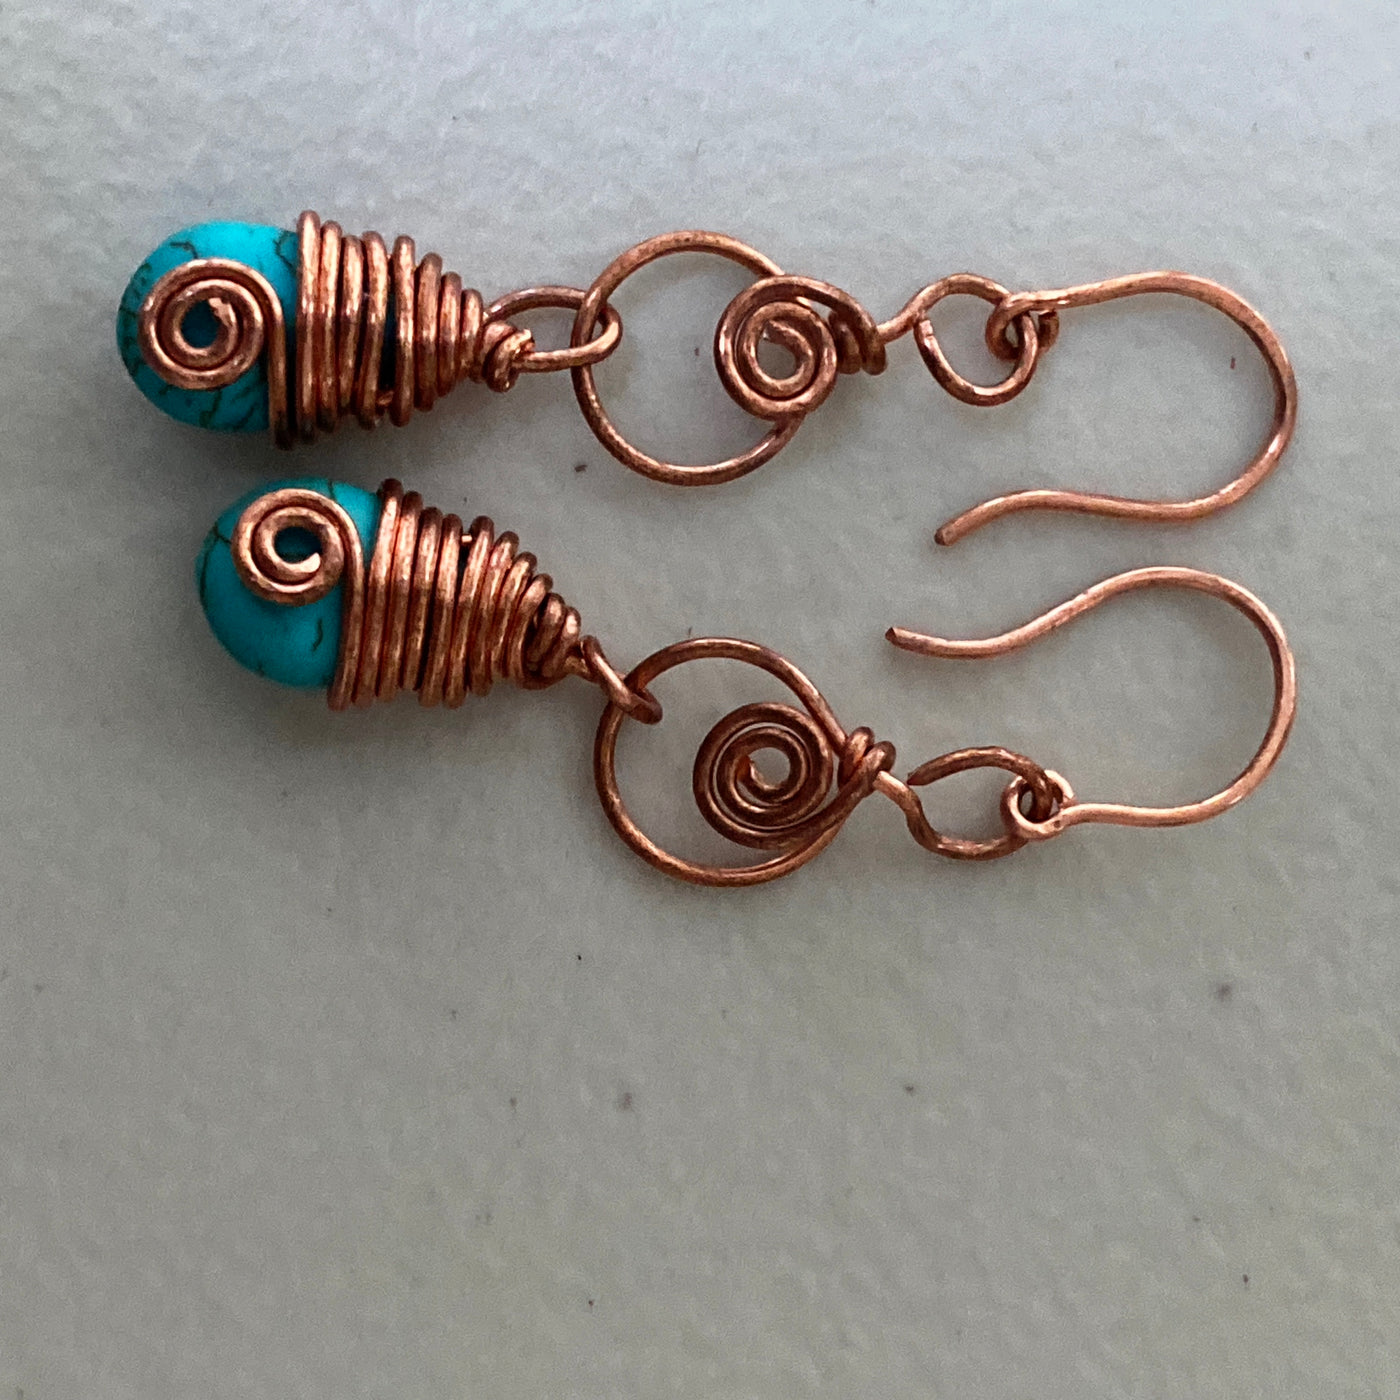 Boucles d'oreilles briolette howlite bleu turquoise décorées de fils.